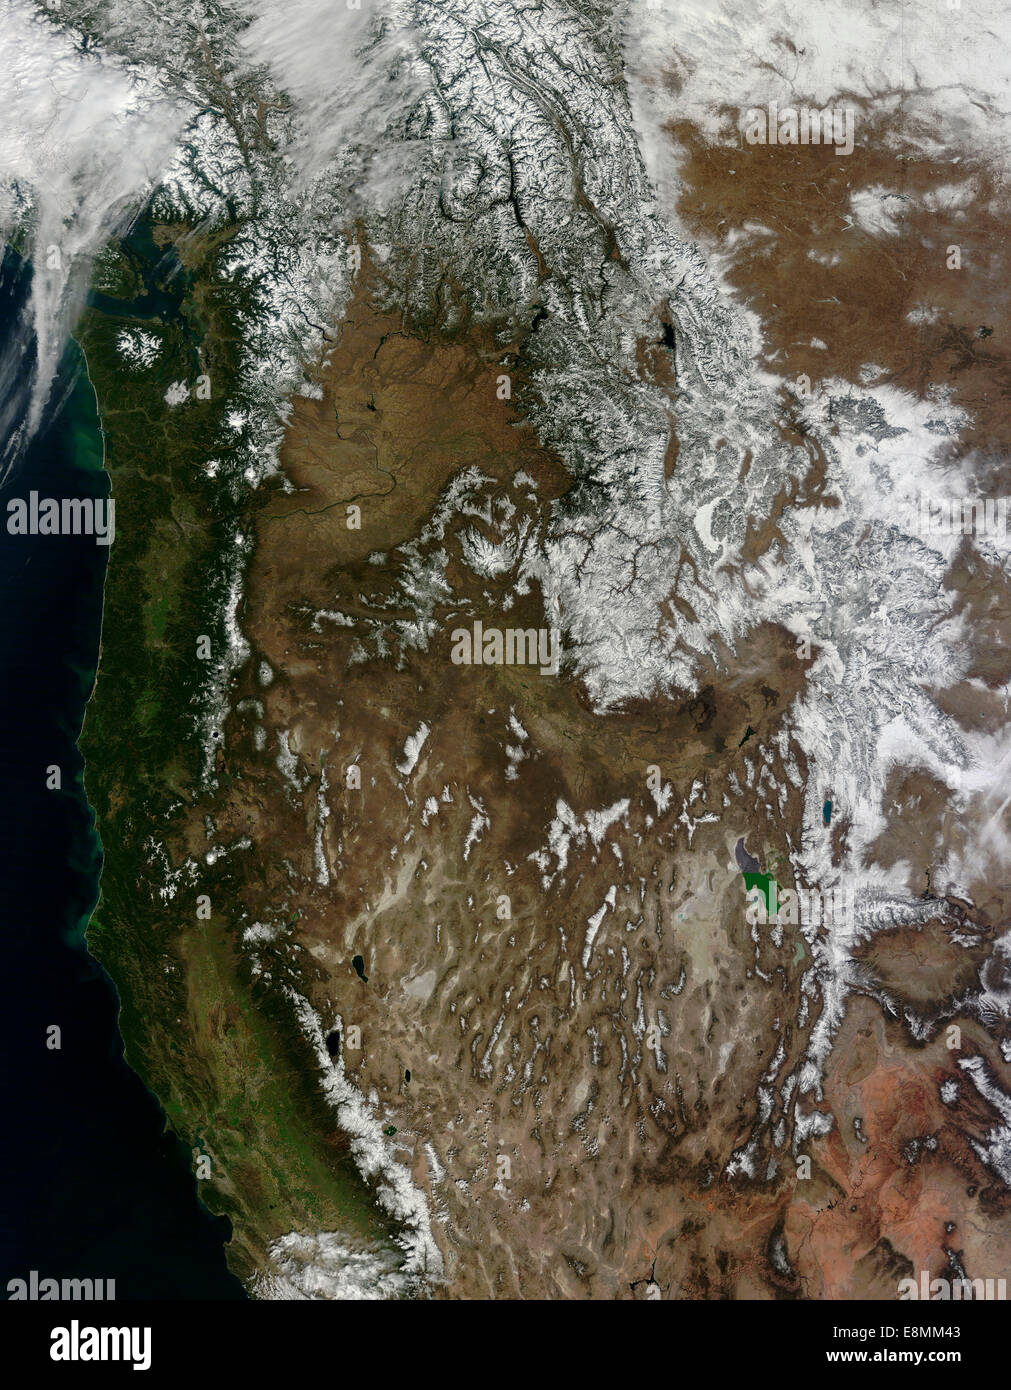 Marzo 12, 2014 - Vista satélite de los Estados Unidos occidentales Foto de stock